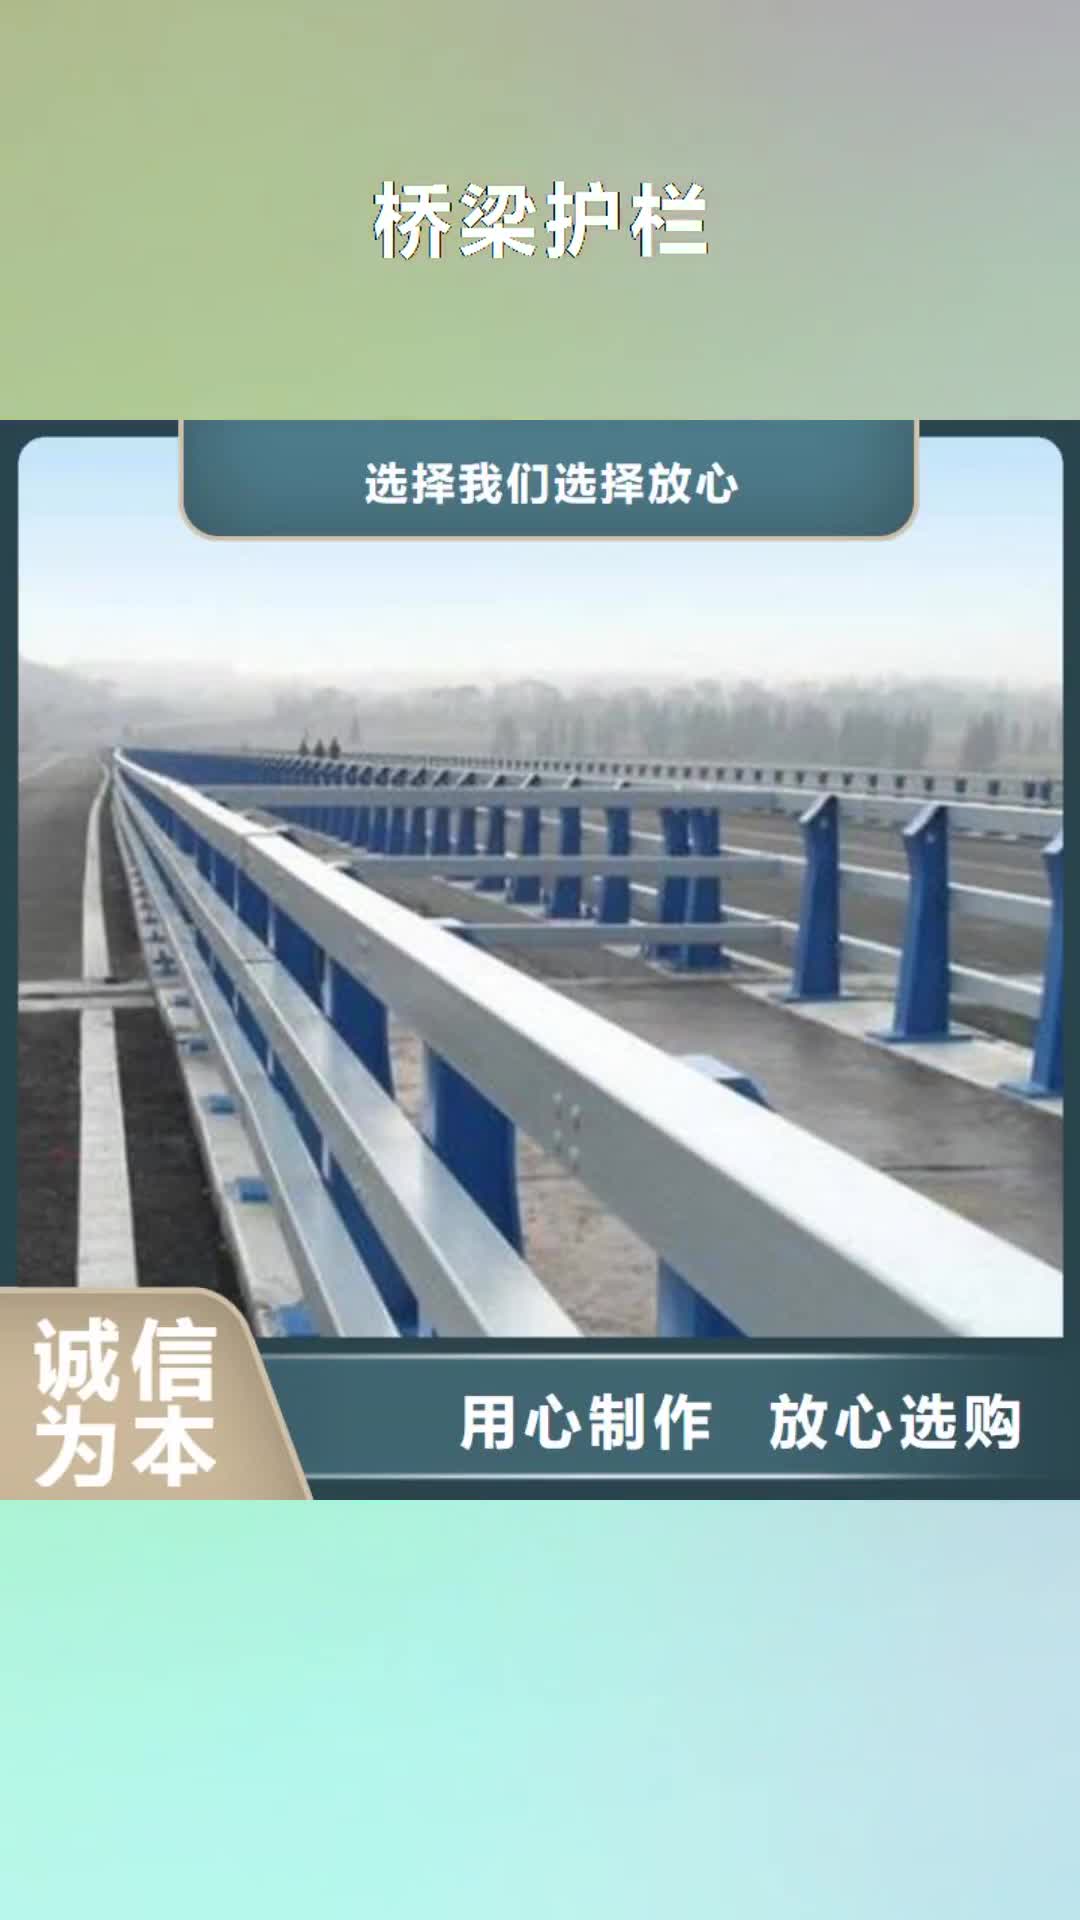 海东【桥梁护栏】 不锈钢桥梁护栏选择我们选择放心